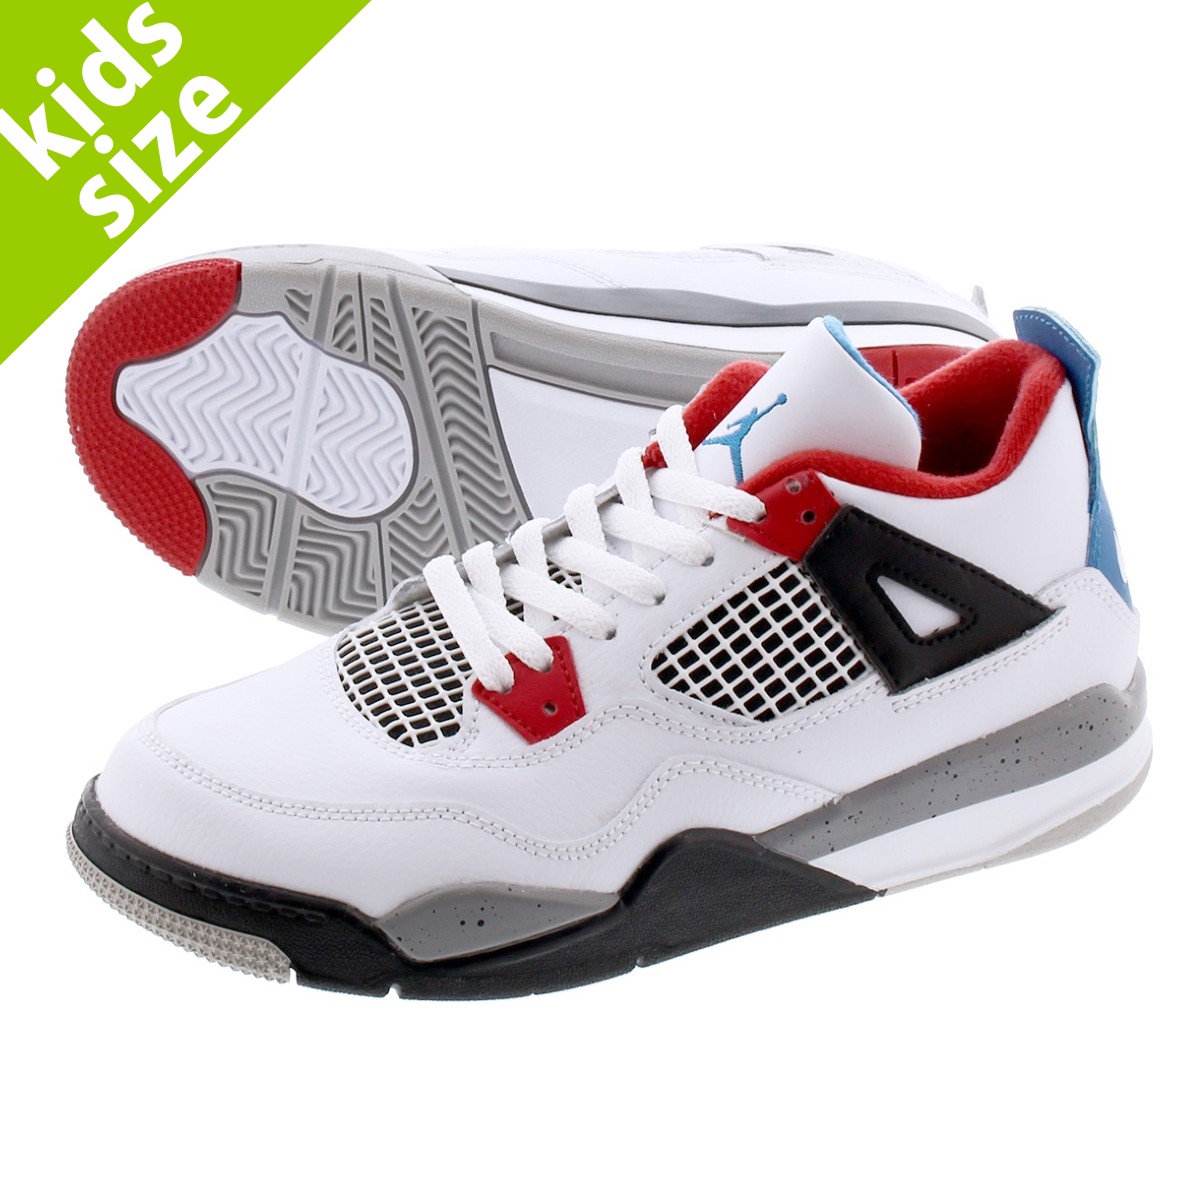 Lowtex Plus Nike Air Jordan 4 Retro Ps Nike Air Jordan 4